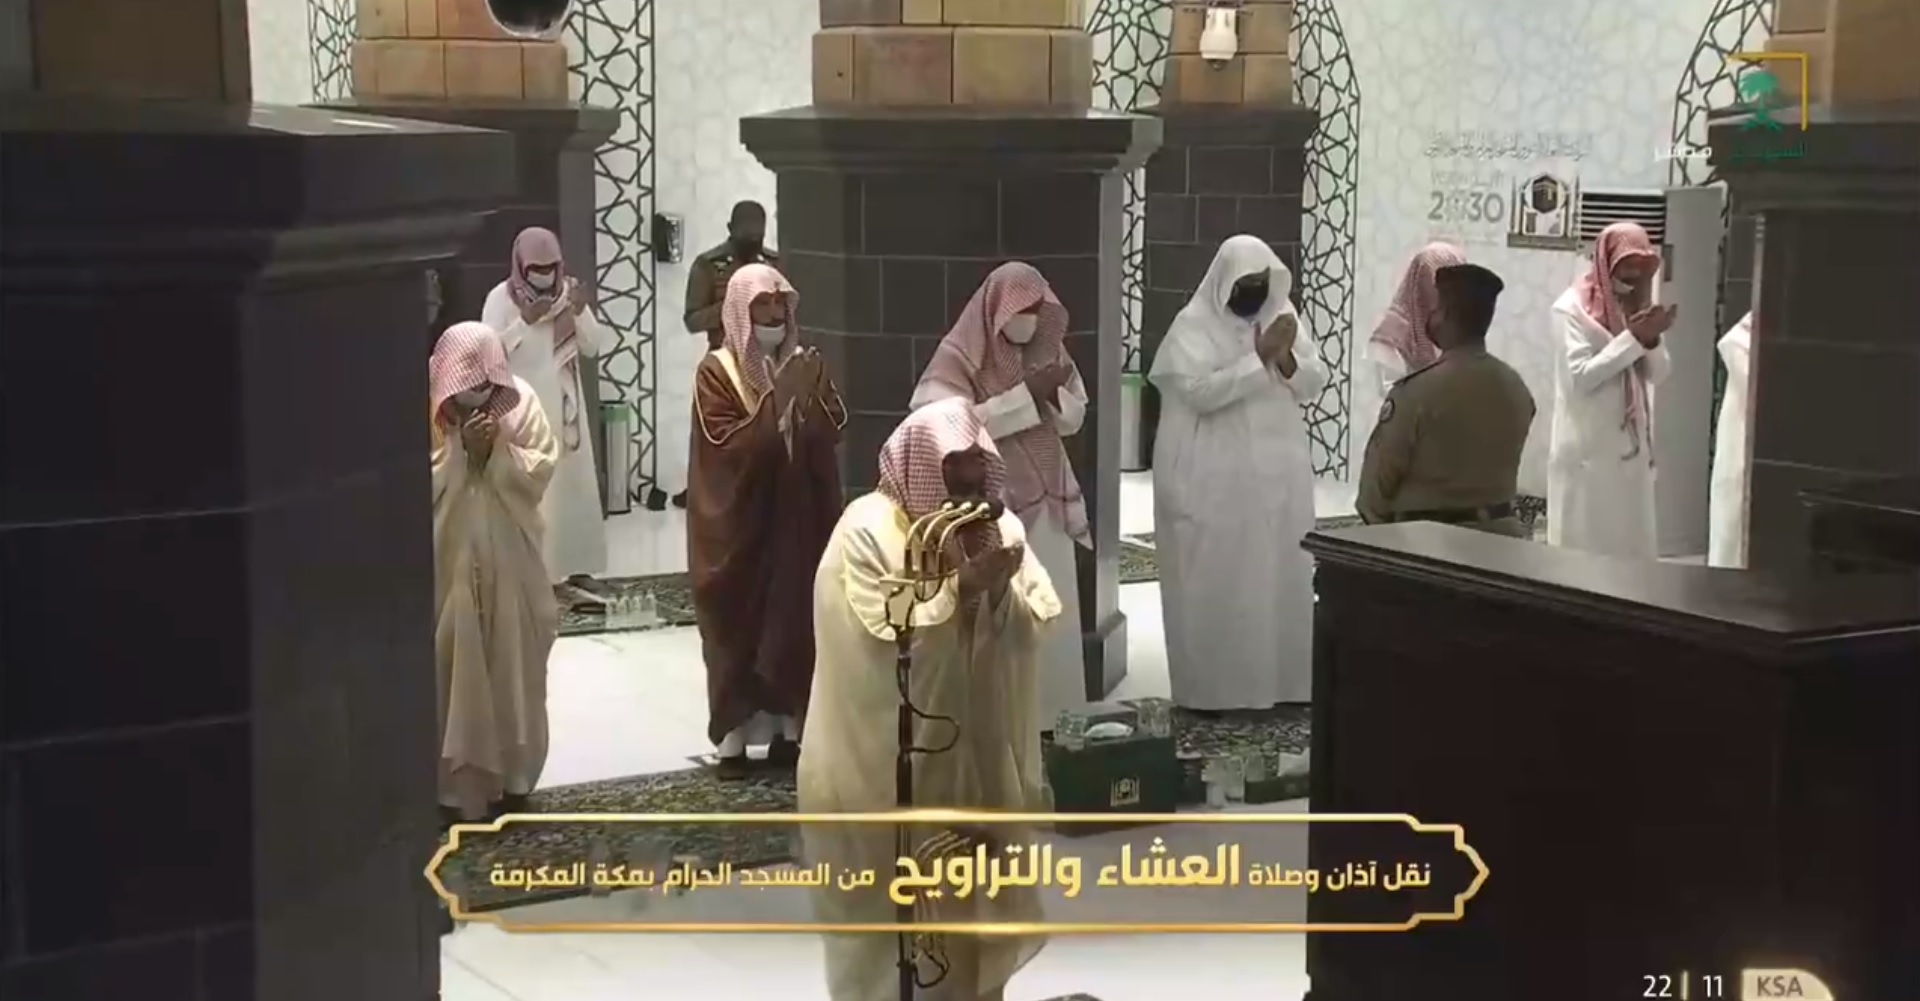 دعاء الشيخ السديس للمرابطين ورجال الأمن والطلاب ليلة 7 رمضان